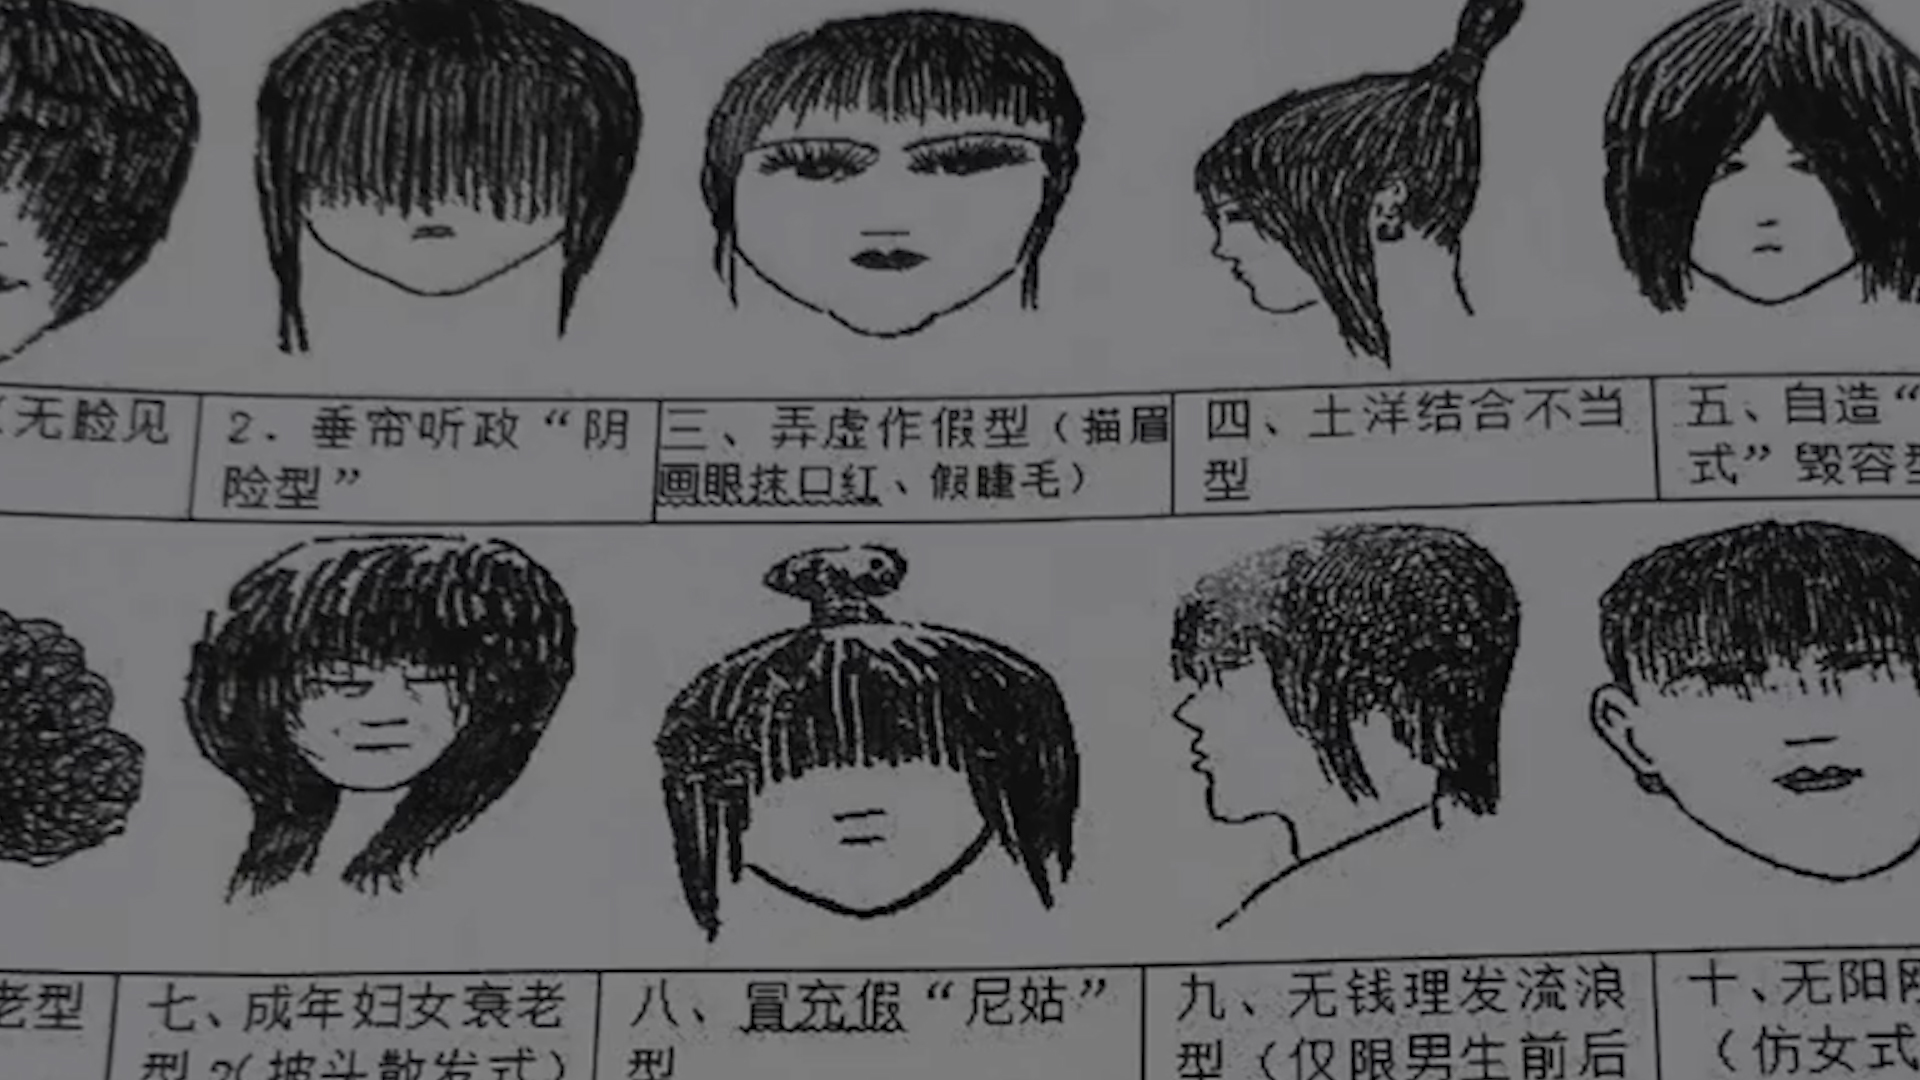 中学发布禁止发型 配有生动形象头像画:你认为中学生发型该管吗